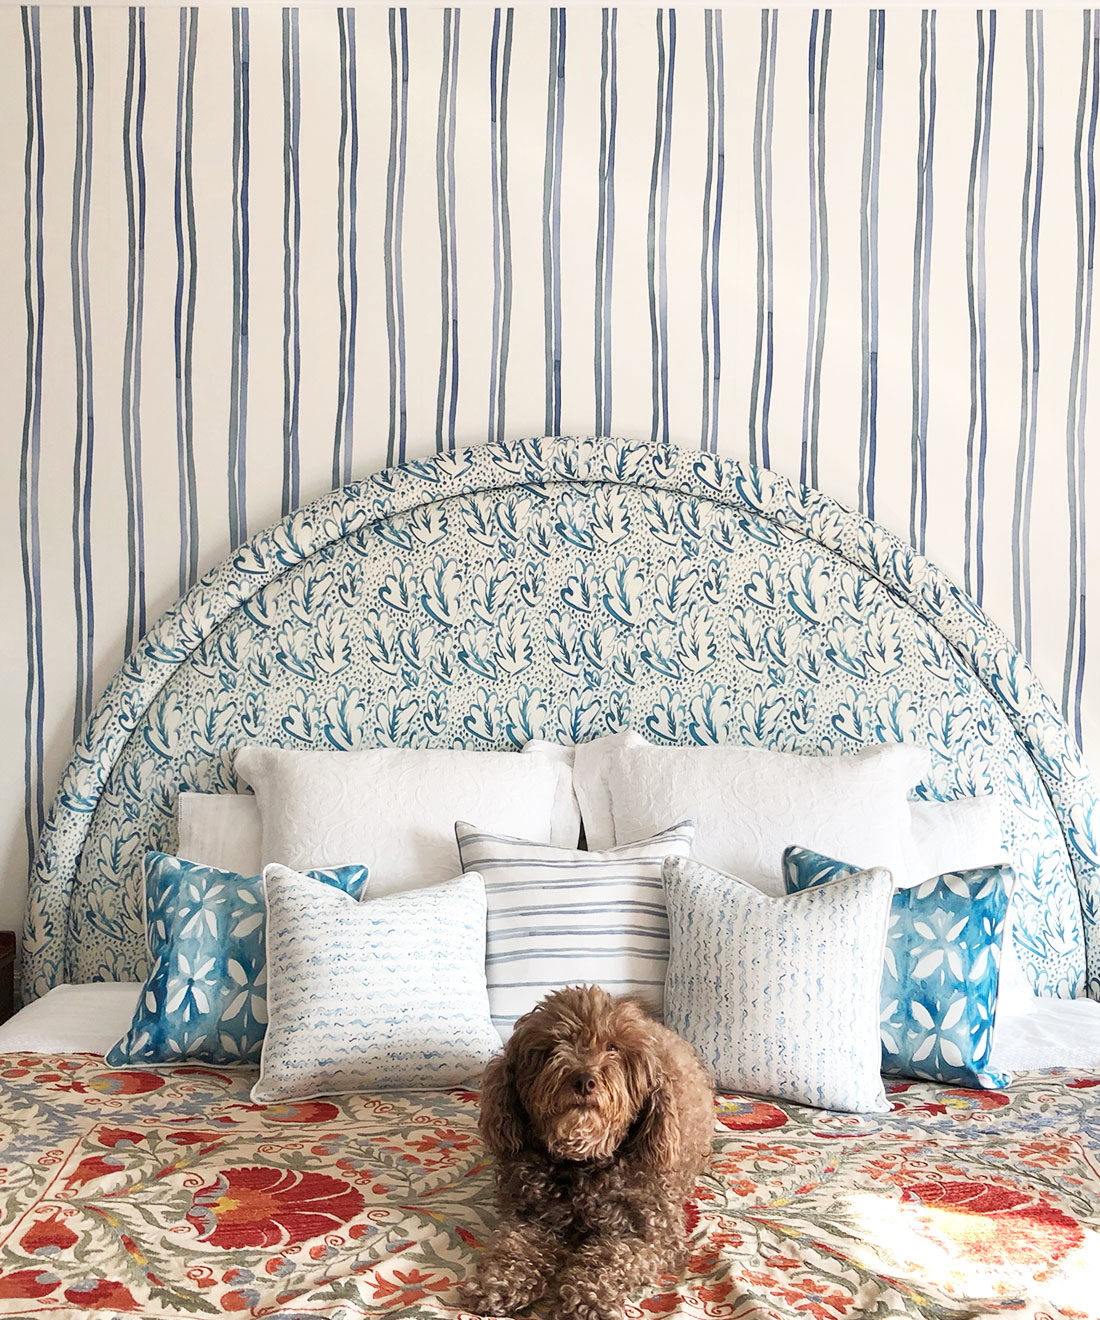 Double Inky Stripe - Gestreifte Tapete - Blaue gestreifte Tapetenrollen - Georgia MacMillan - Milton & King Europe - Schlafzimmer Tapete, die ein Bett mit einem braunen Hund zeigt